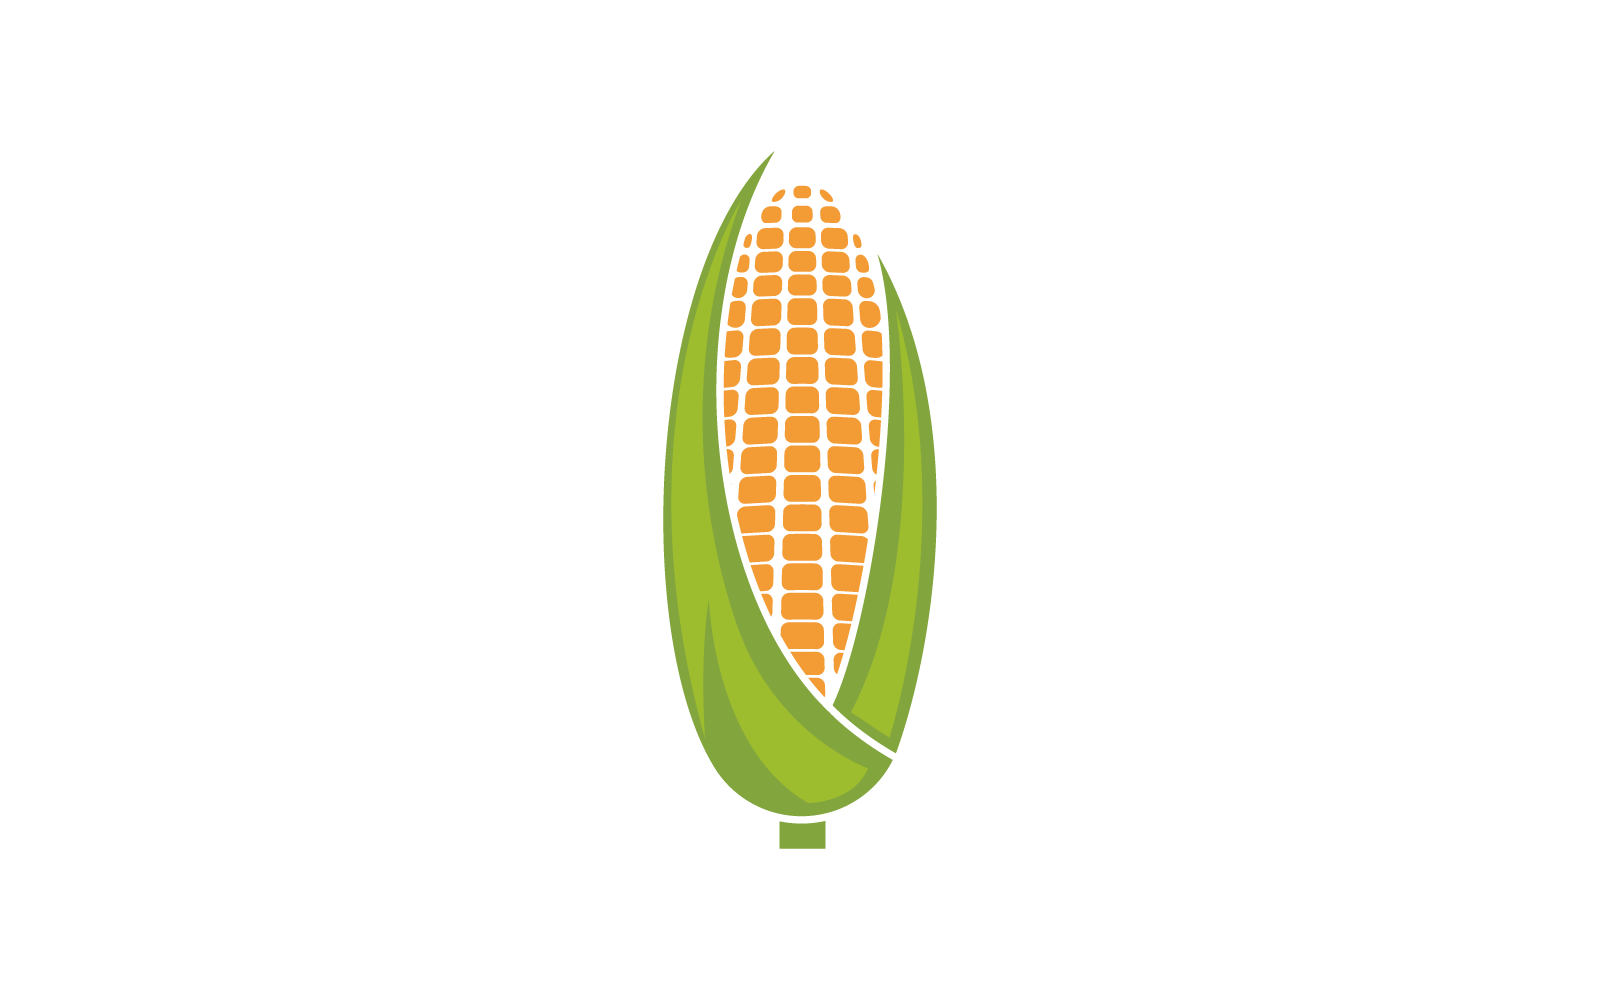 Kukuřice logo ilustrace vektorové plochý design